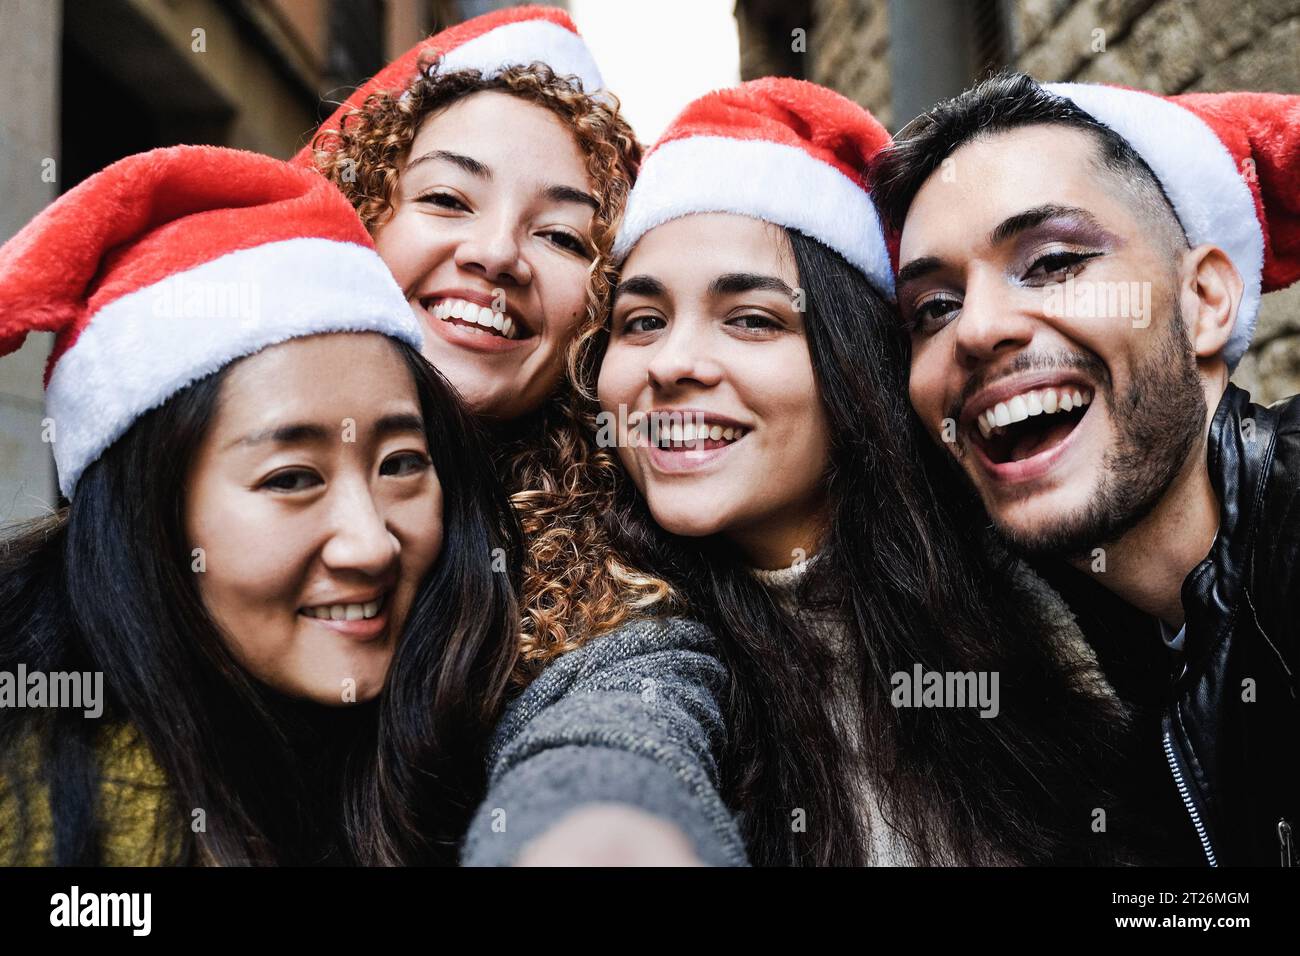 Eine Gruppe von Freunden, die Spaß haben, Weihnachten auf der Straße der Stadt zu feiern - Junge Leute machen Selfie-Fotos mit Weihnachtsmannmützen während der Ferien Stockfoto